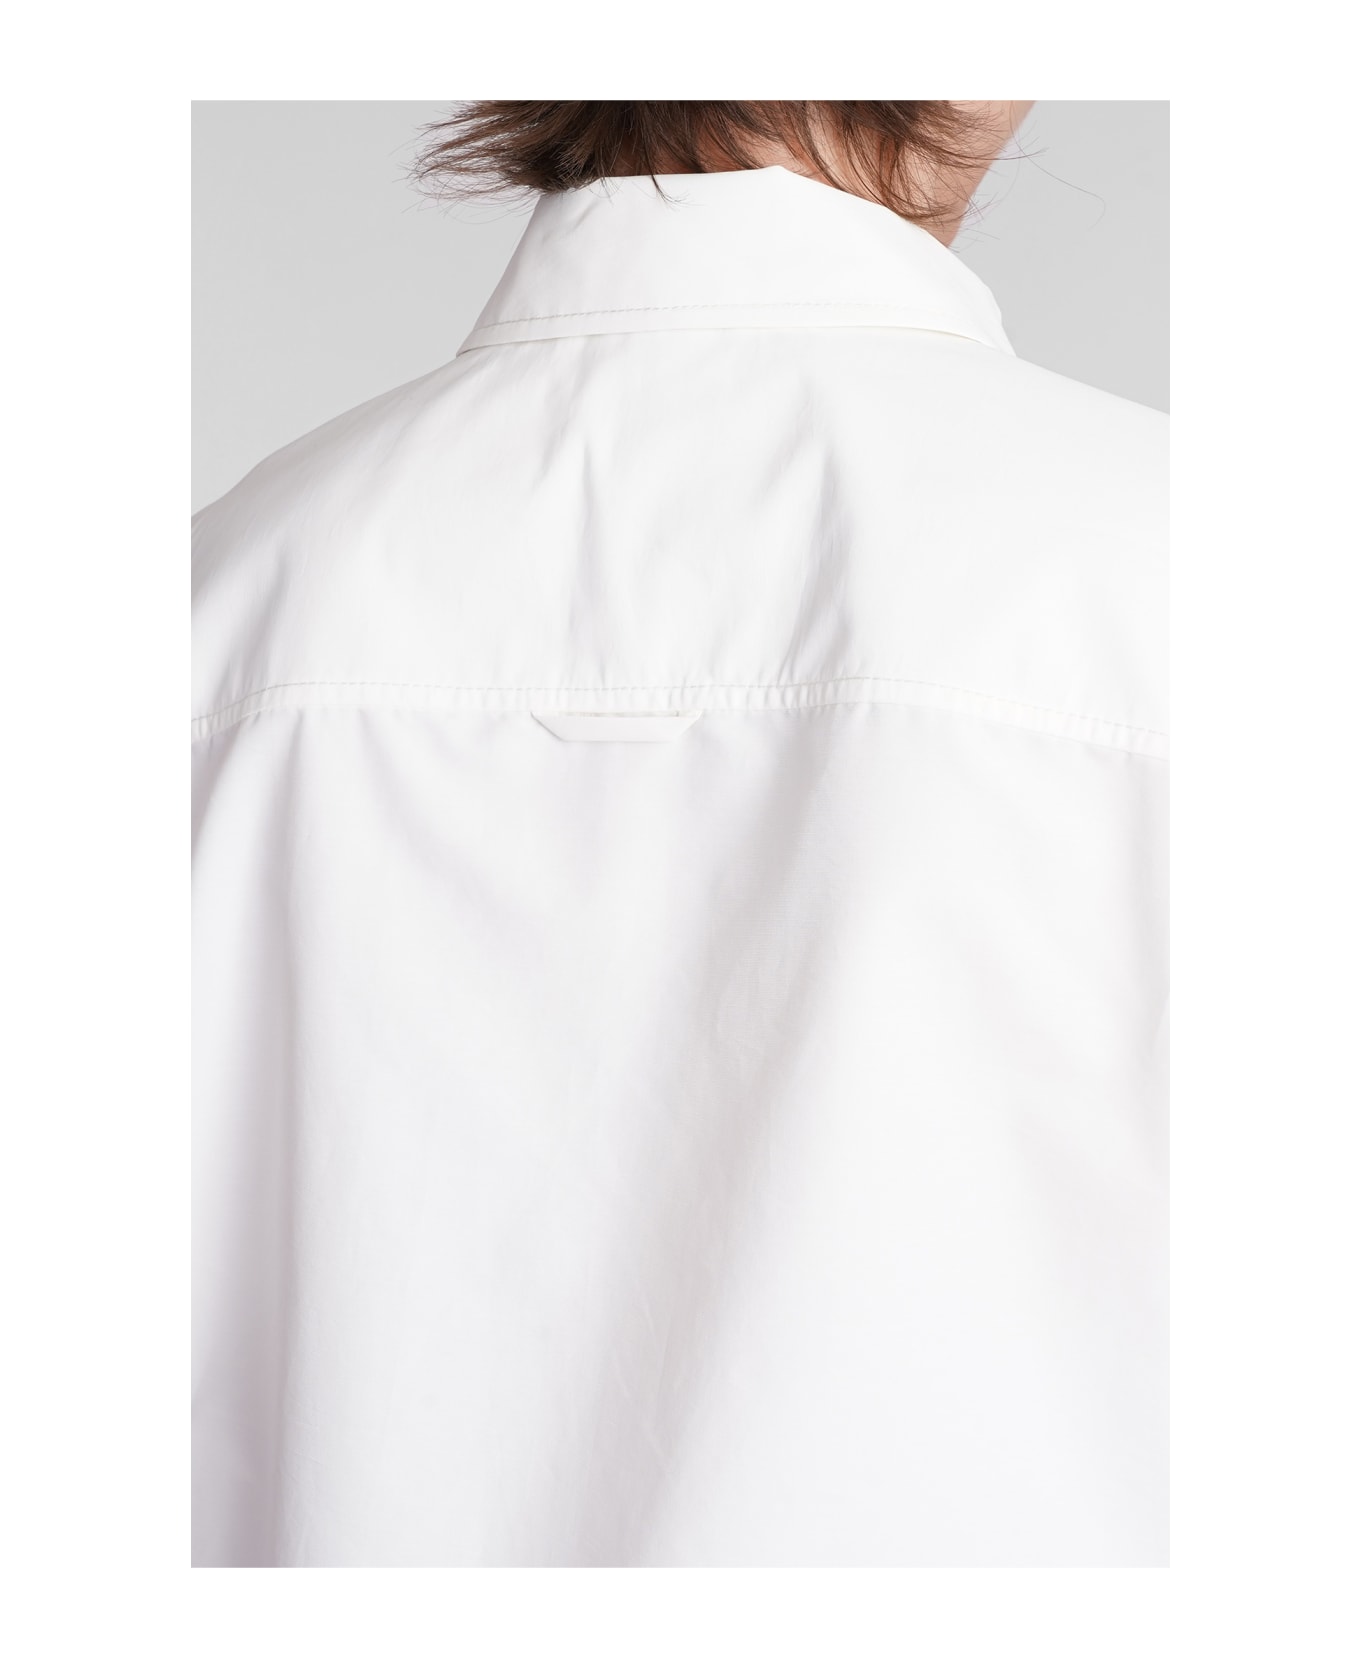 Simkhai Ryett Shirt In White Cotton - white